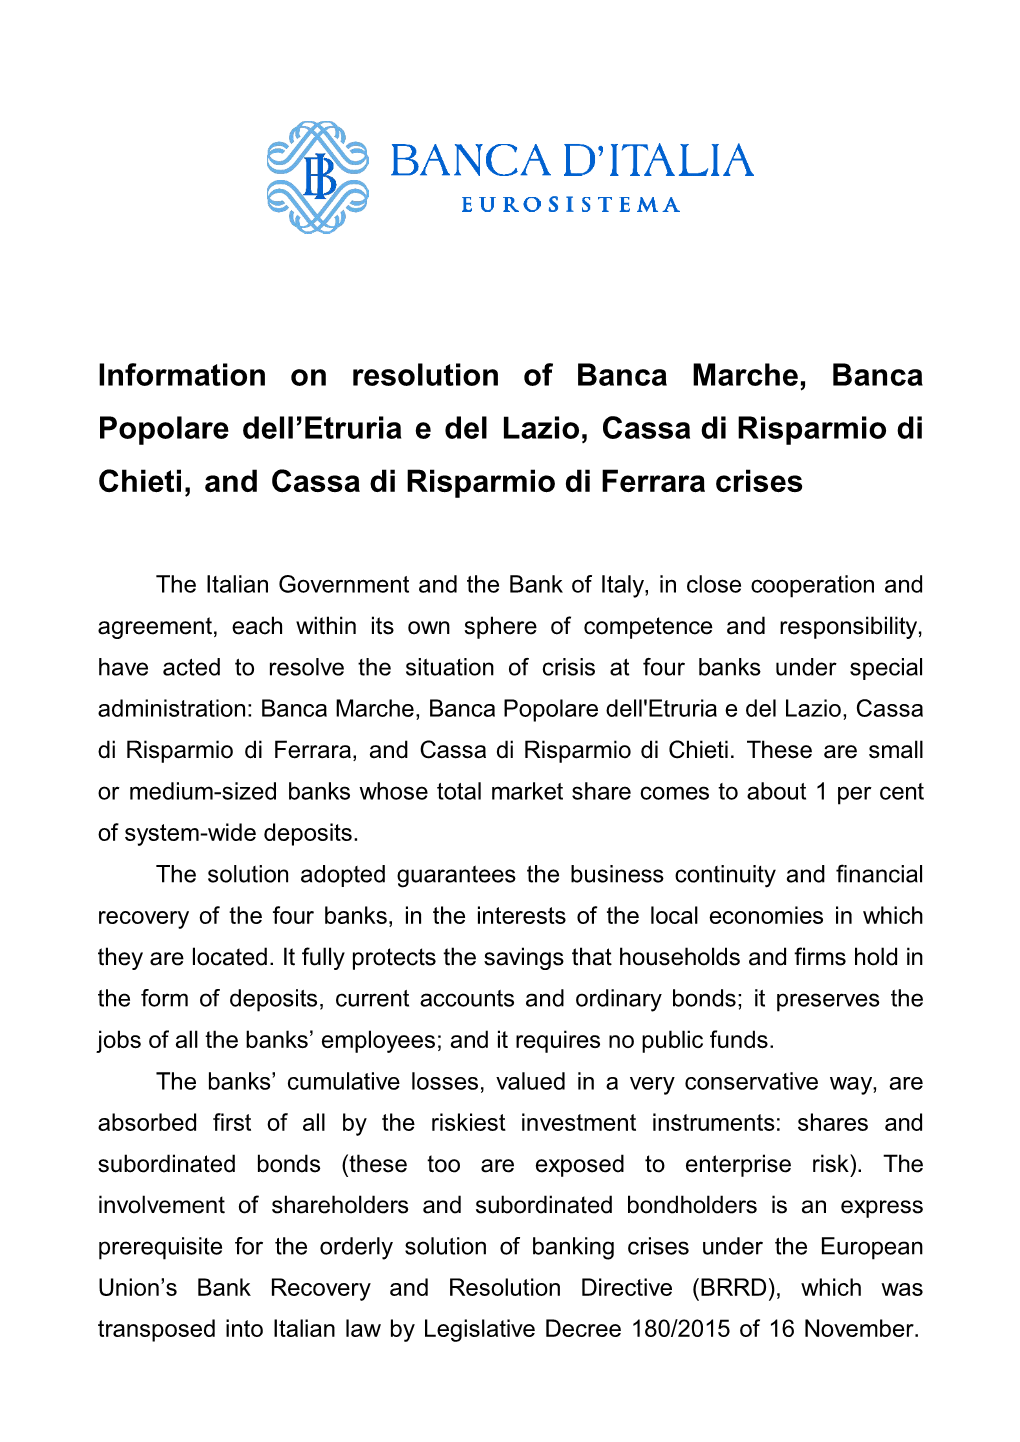 Information on Resolution of Banca Marche, Banca Popolare Dell’Etruria E Del Lazio, Cassa Di Risparmio Di Chieti, and Cassa Di Risparmio Di Ferrara Crises